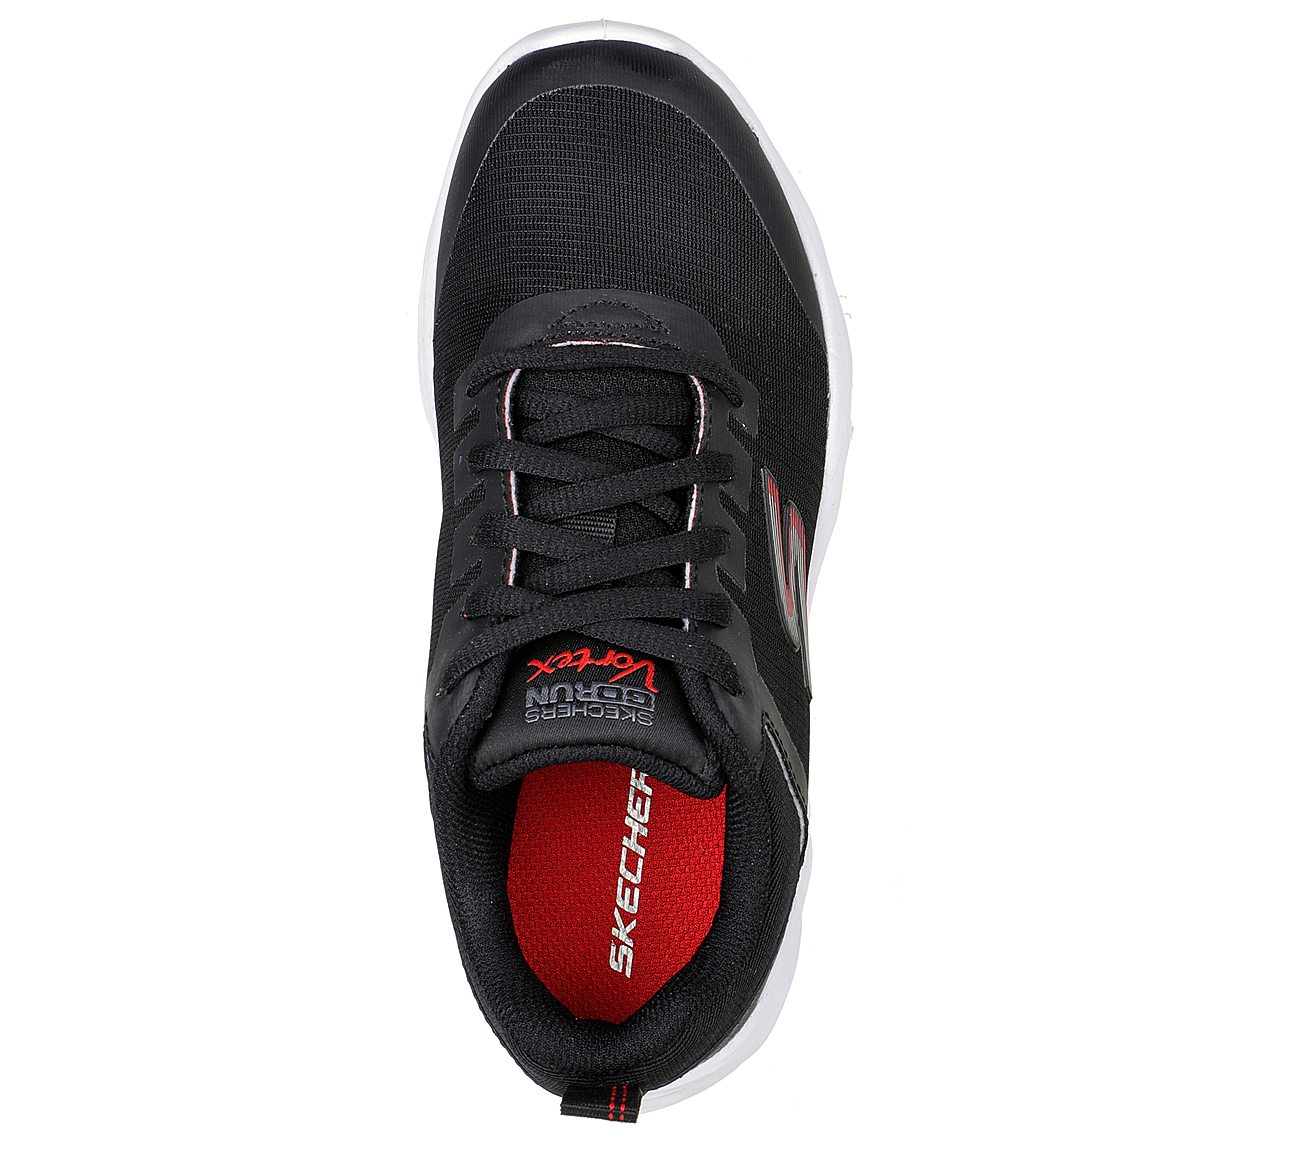 GO RUN VORTEX - STORM, BLACK/RED Footwear Top View